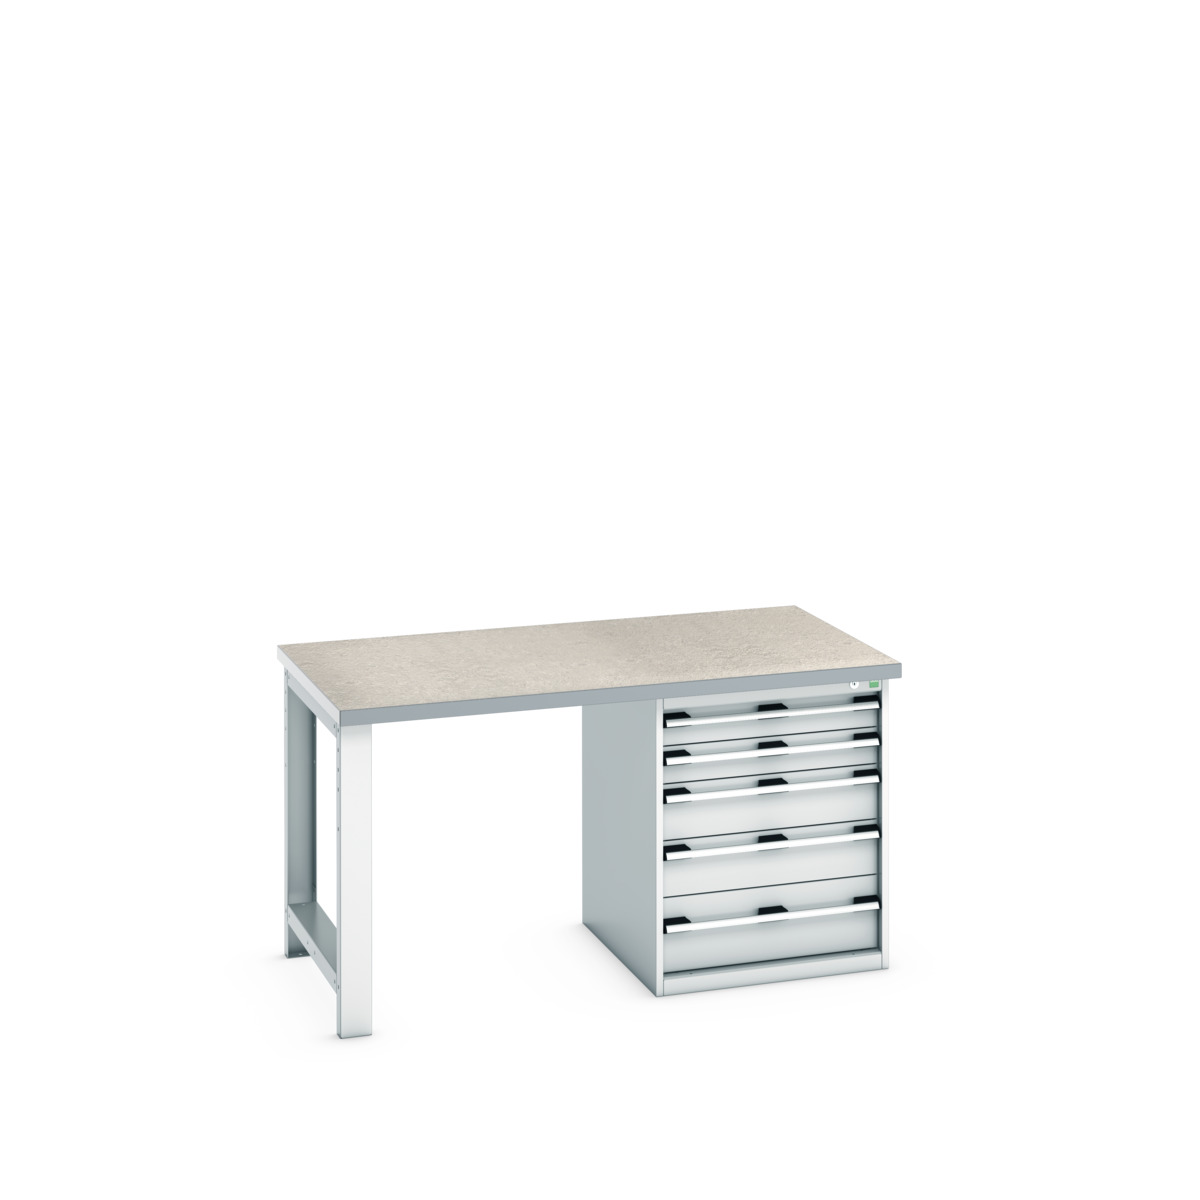 41004110.16V - cubio pedestal bench (lino)